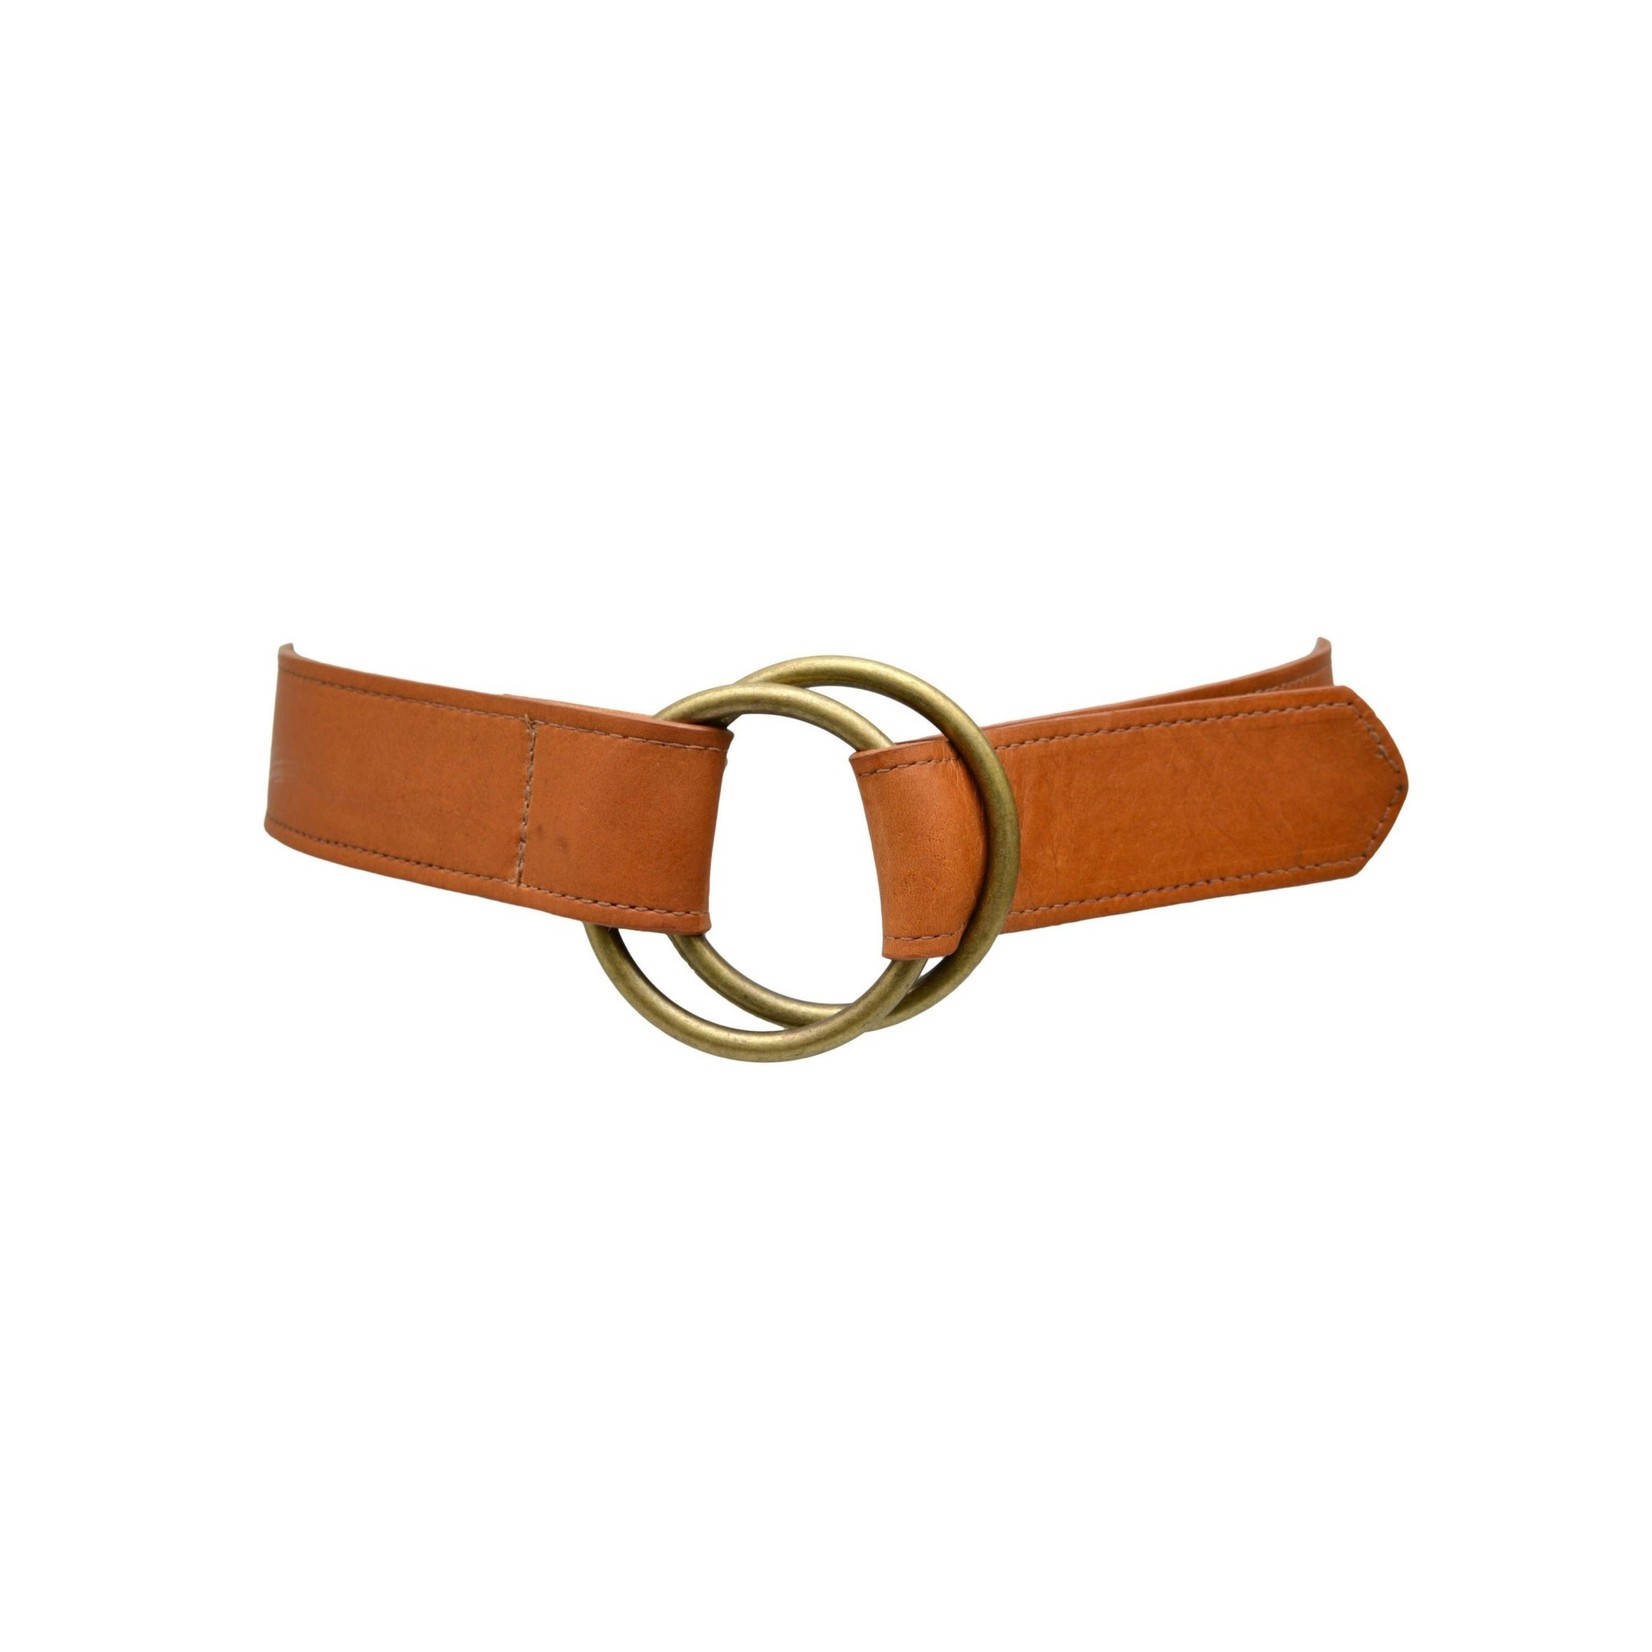 ADA Josie Double Ring Leather Belt in Cognac